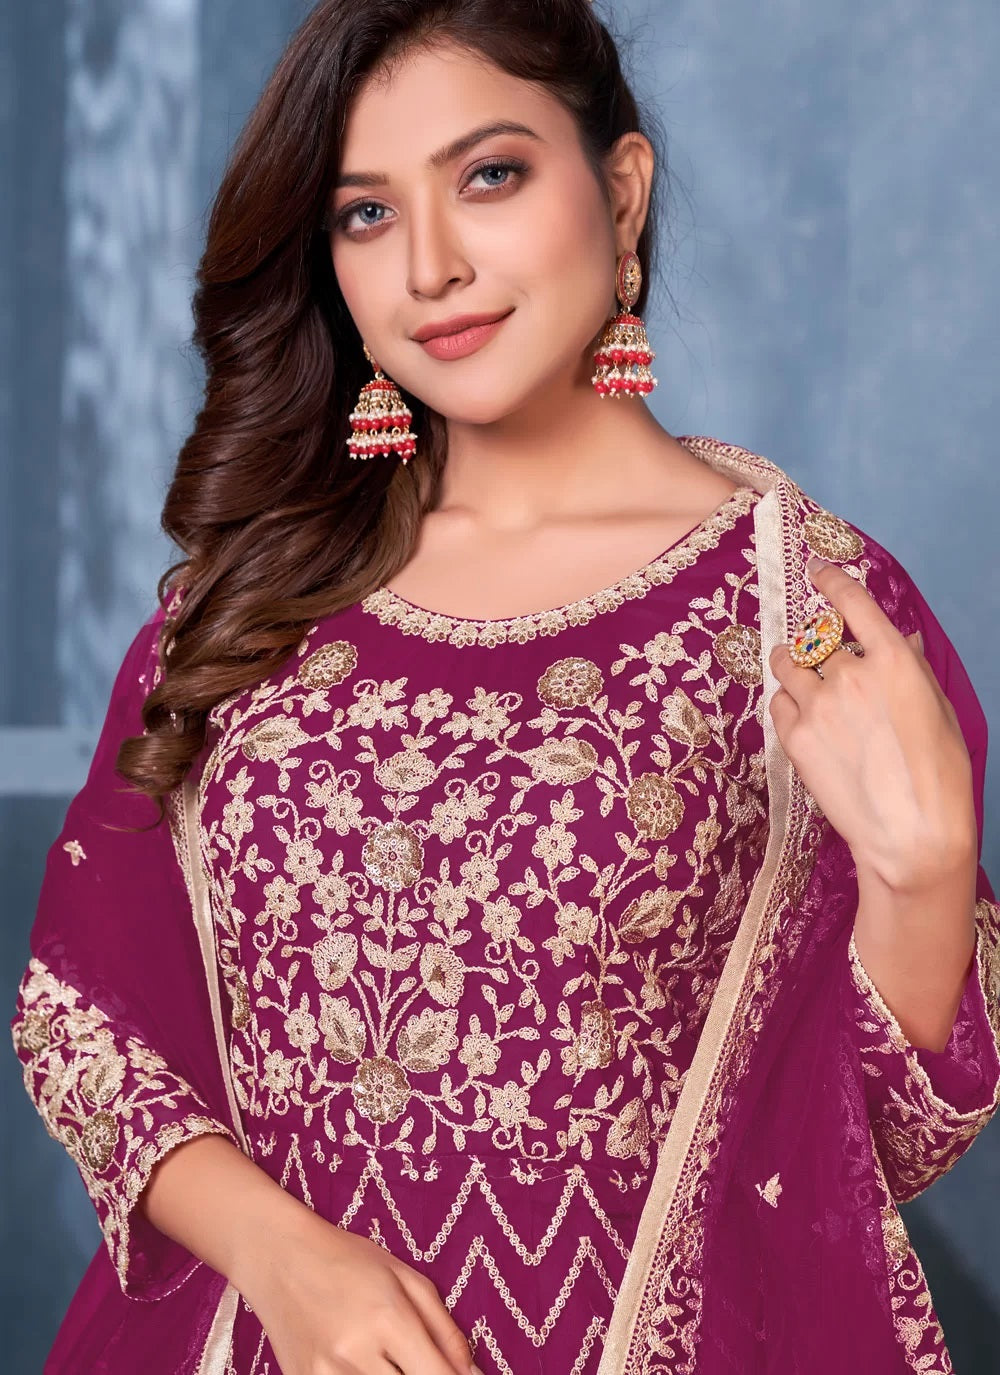 Bella Fancy Dresses Net Salwar Suit Sequins Net Floor Length Salwar Kameez Magenta